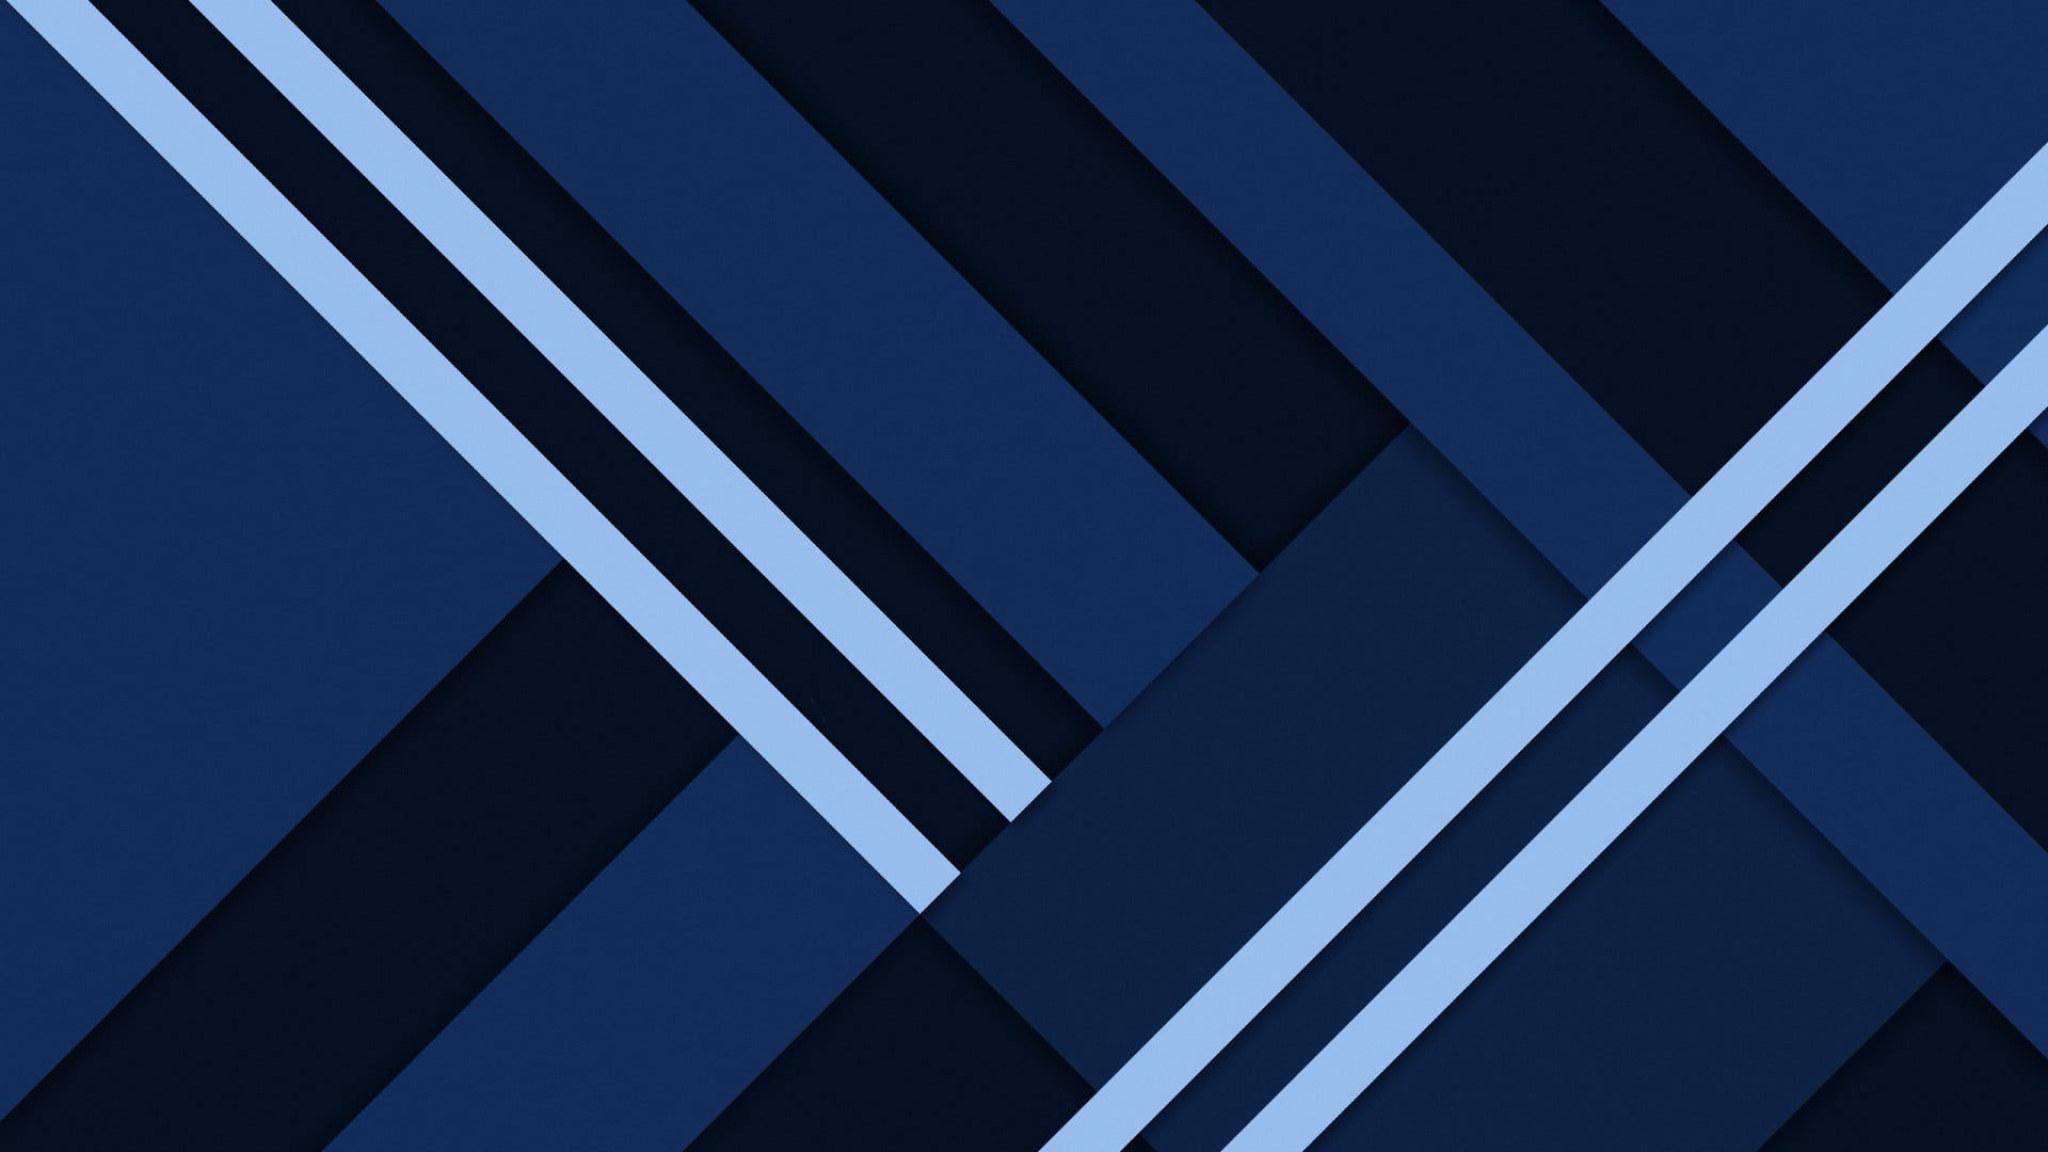 2048 x 1152 · jpeg - Material blue wallpaper, material design, minimal art, minimalist ...